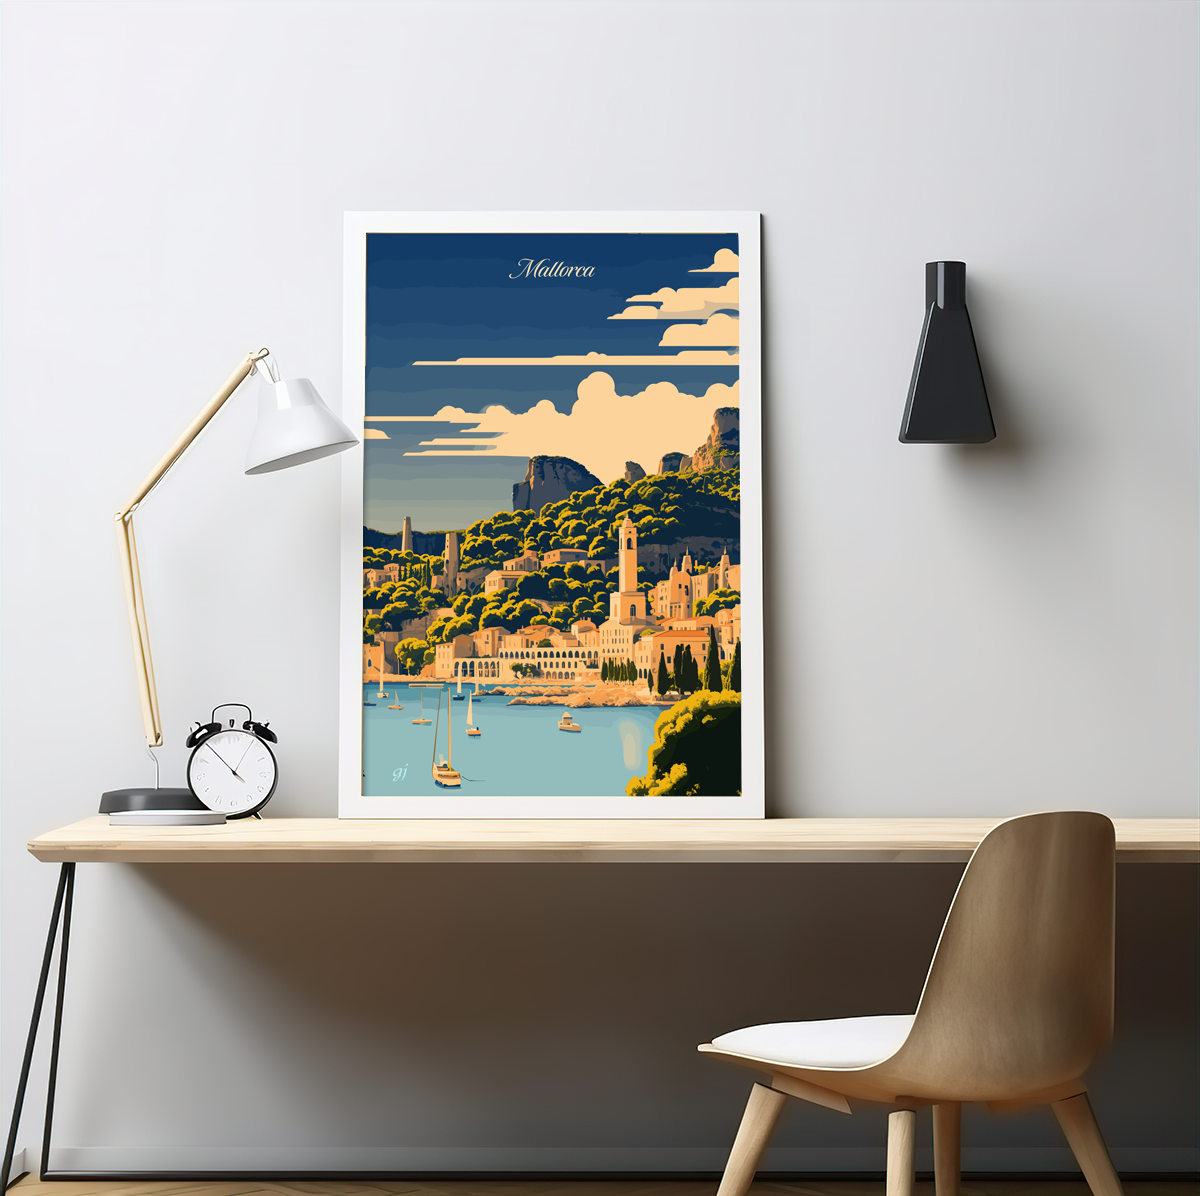 Mallorca poster by bon voyage design